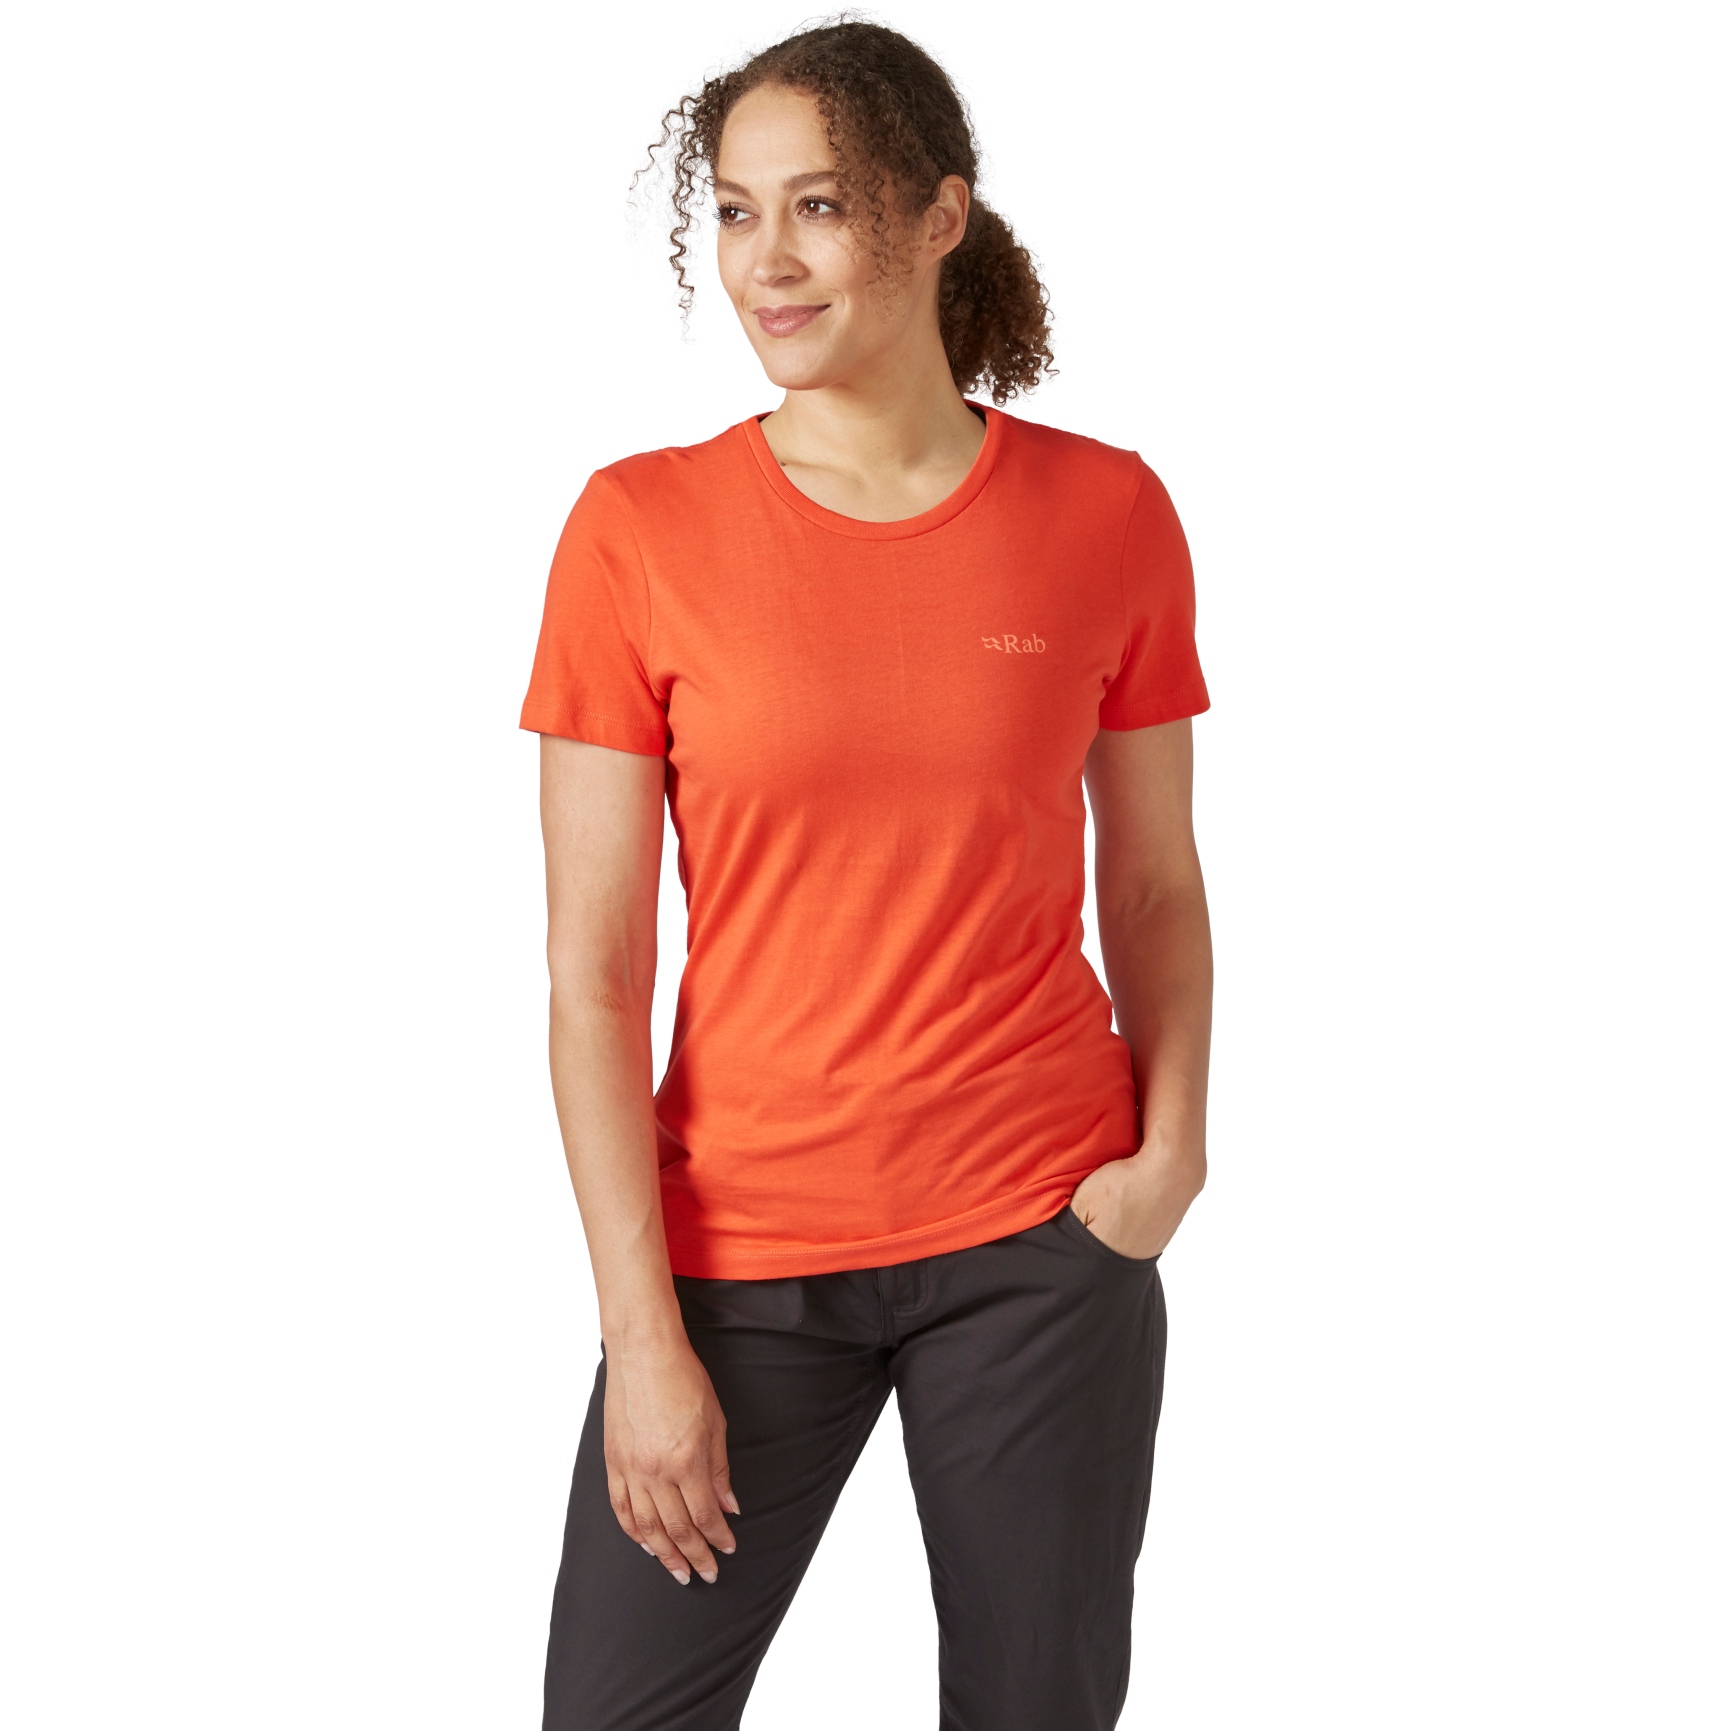 Produktbild von Rab Stance Cinder T-Shirt Damen - red grapefruit